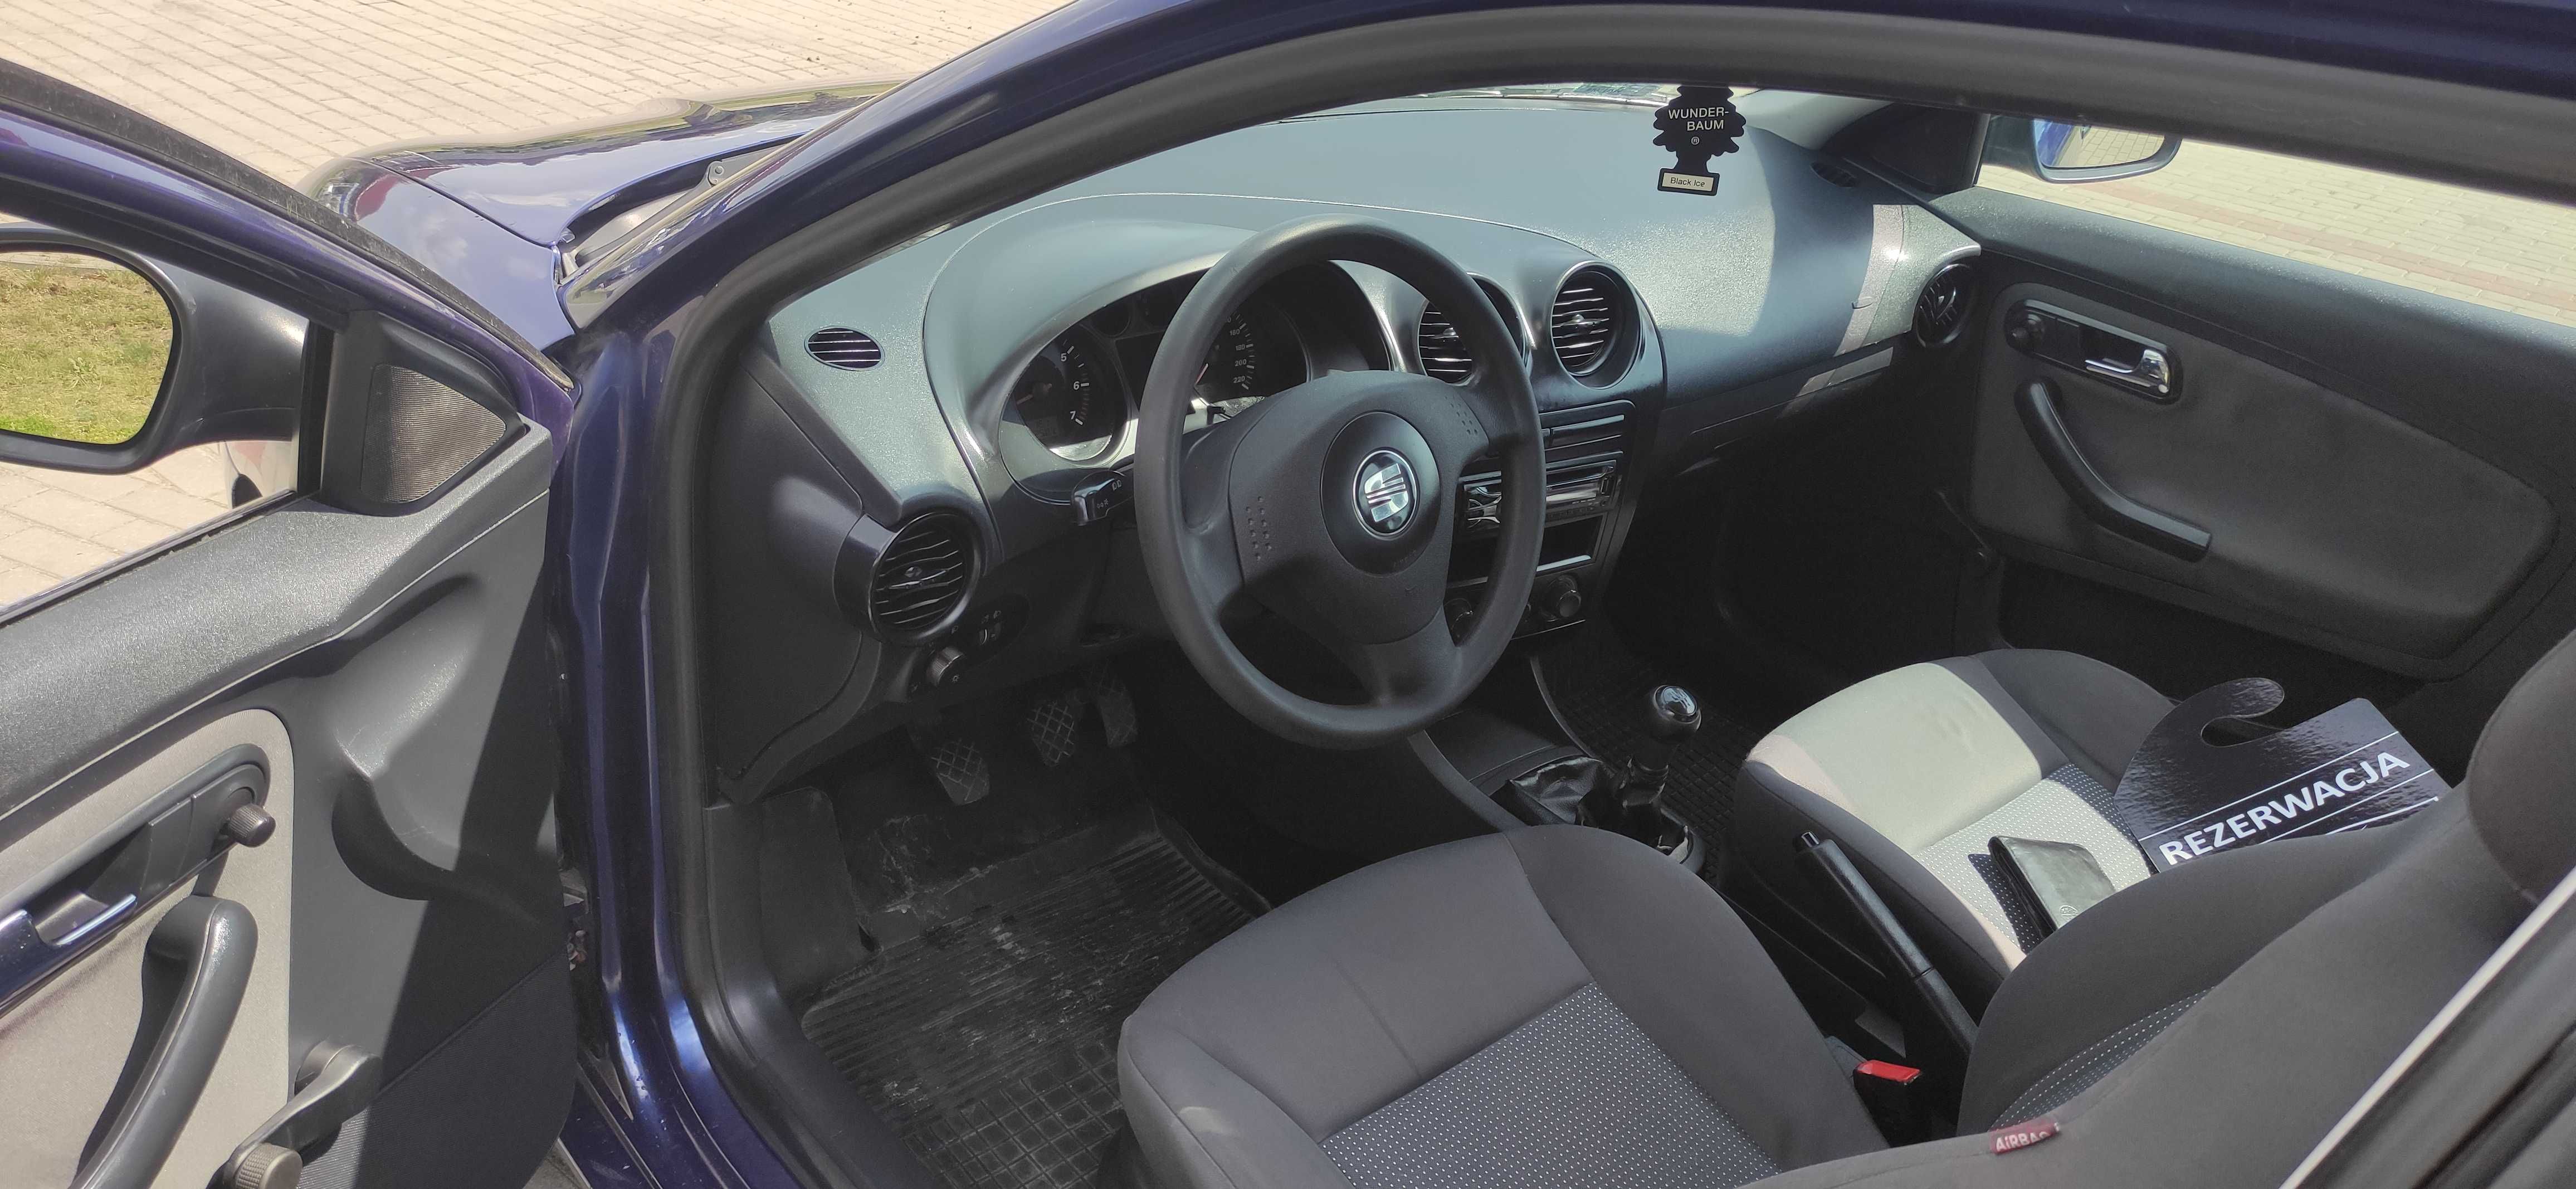 Seat Ibiza 6L 1.2 benzyna